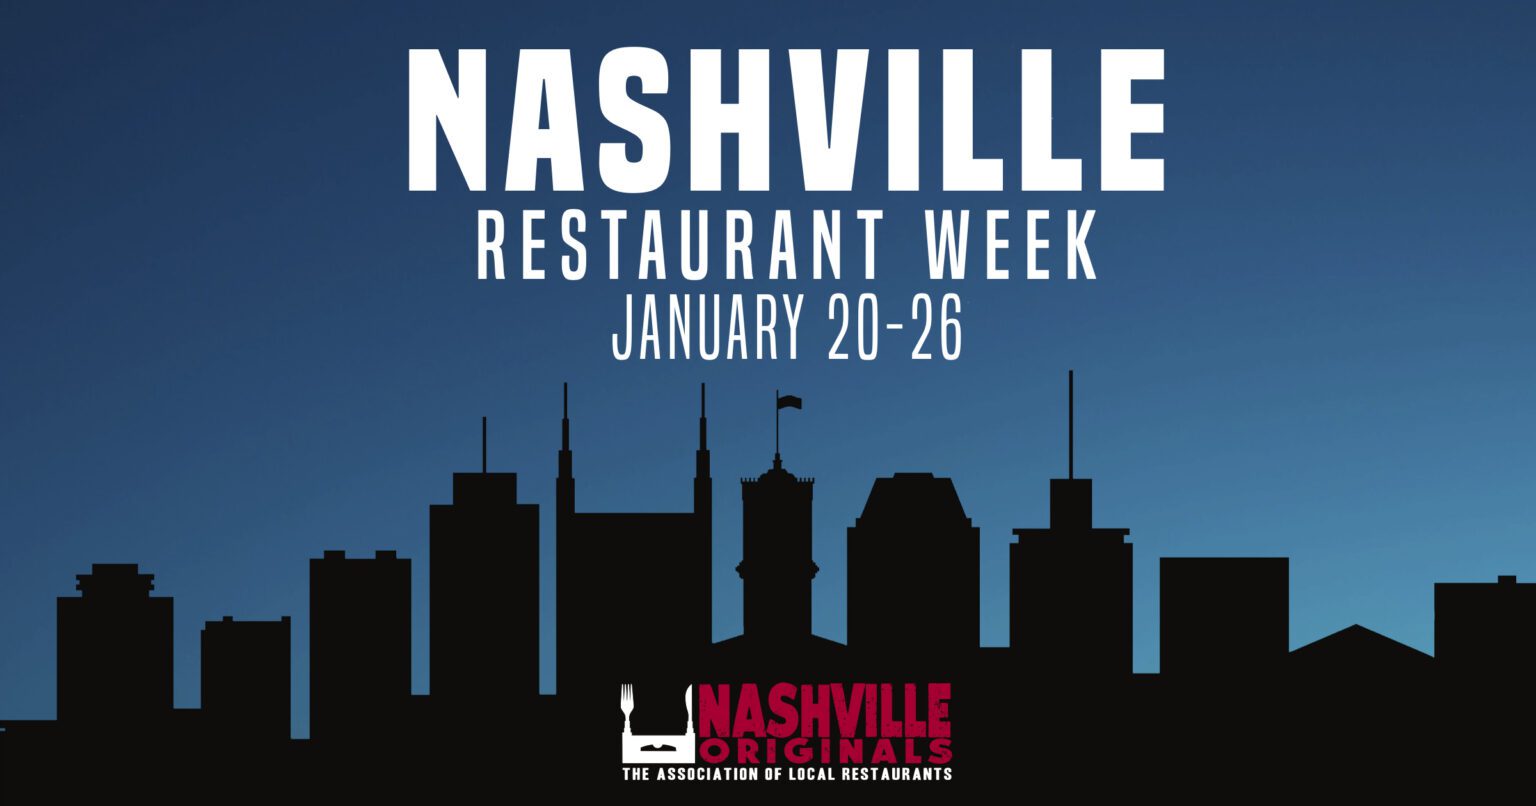 Nashville Restaurant Week 2020 1536x806 